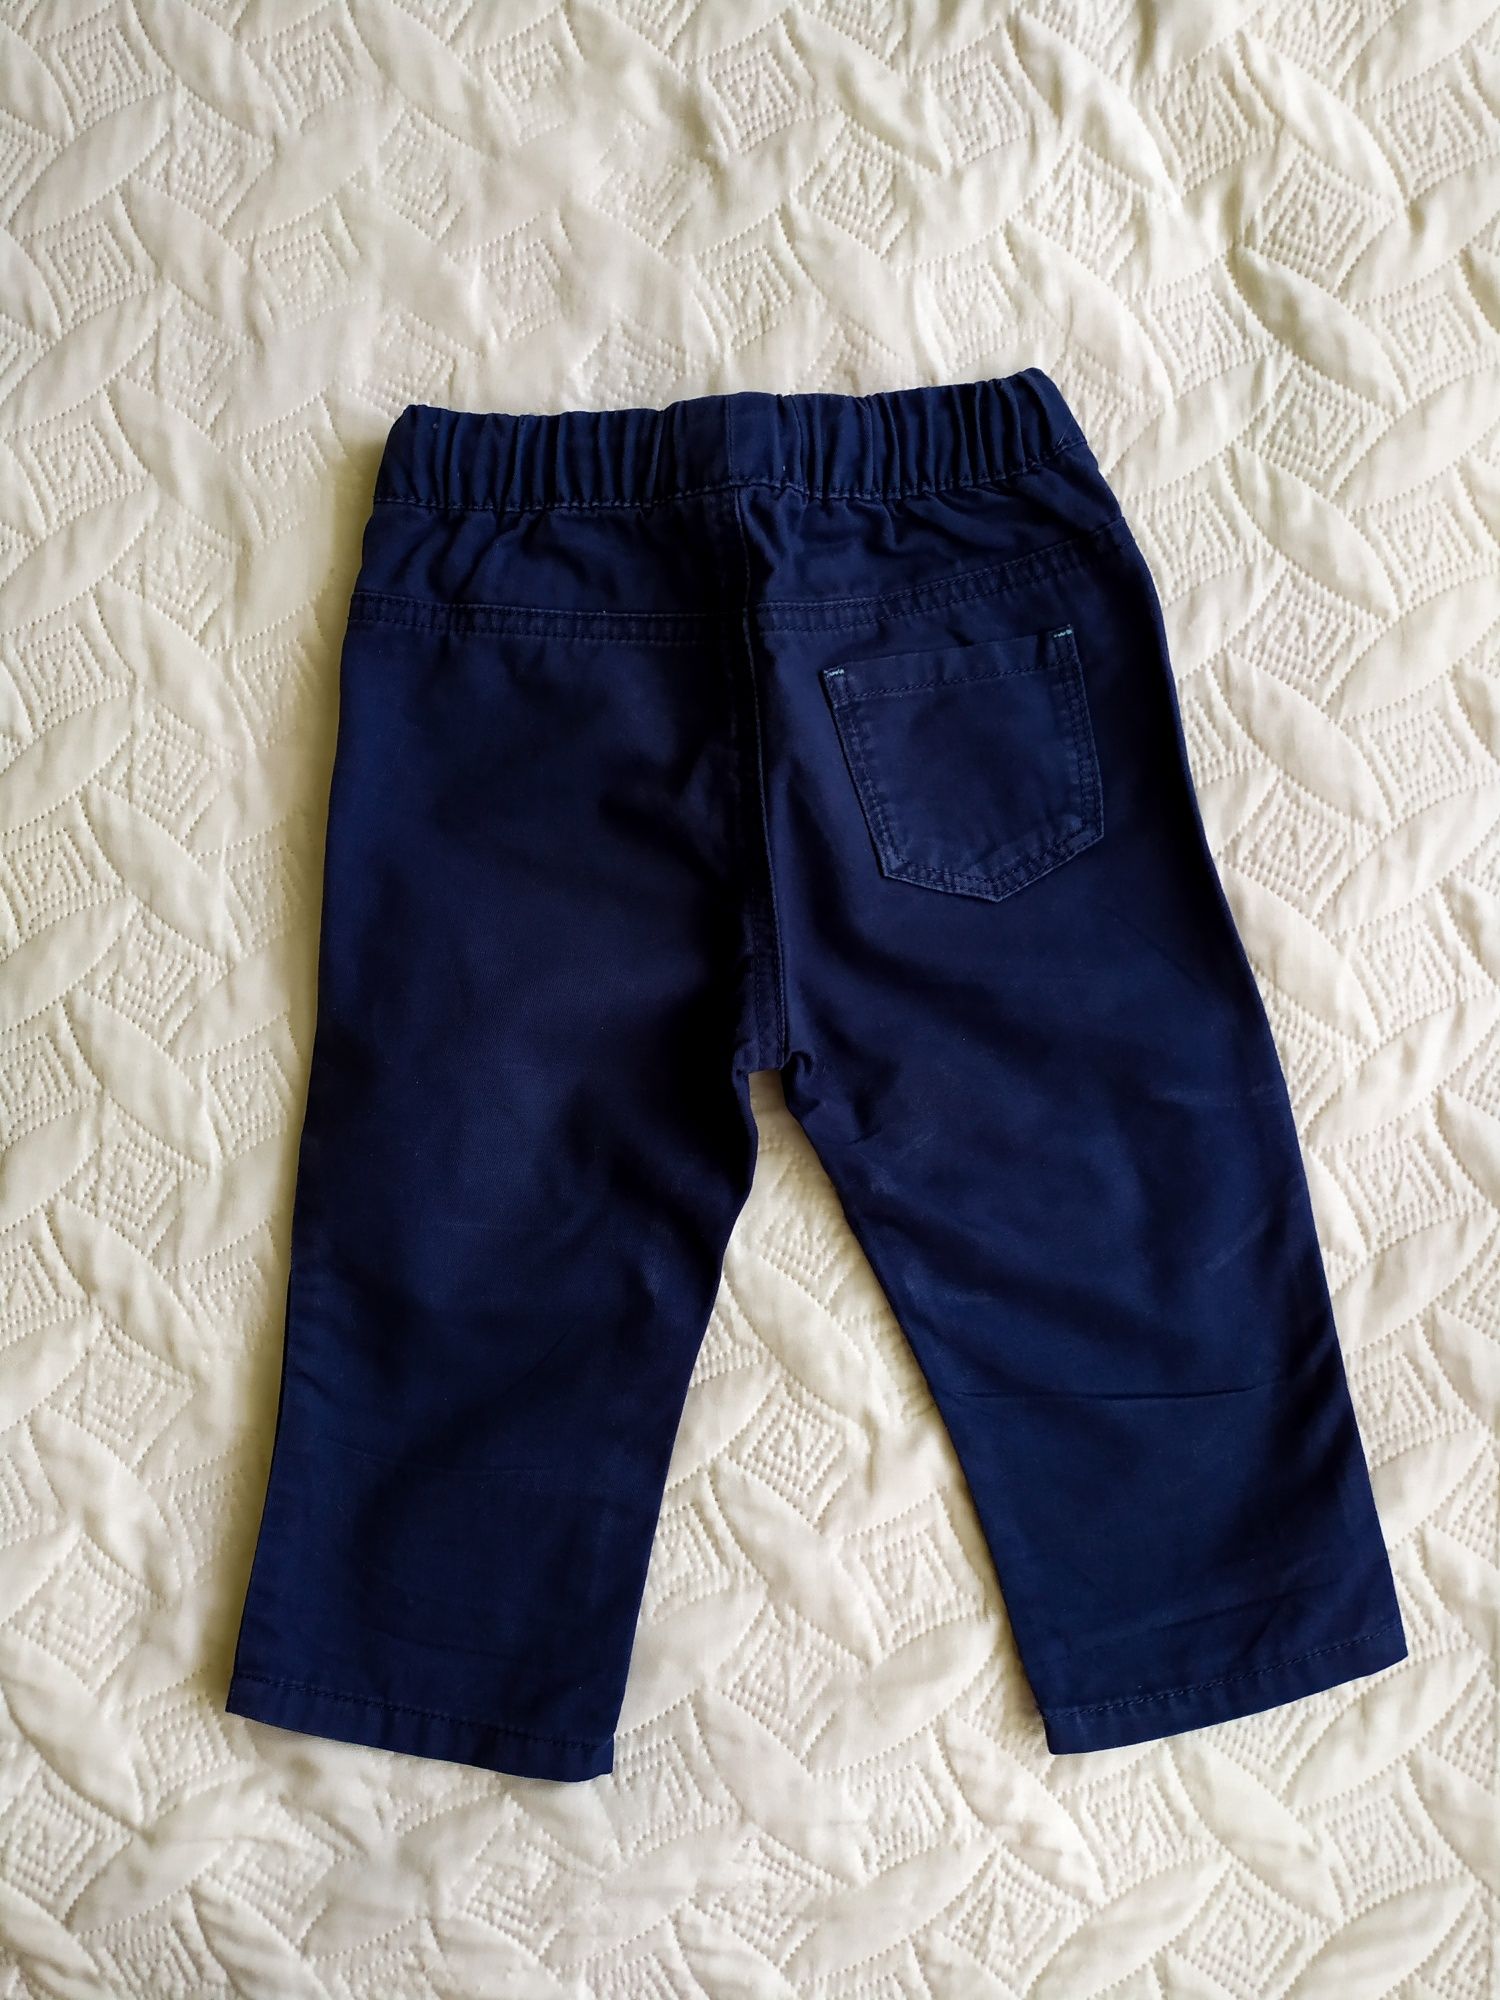 Детские коттоновые брюки штаны на мальчика р. 80-86см